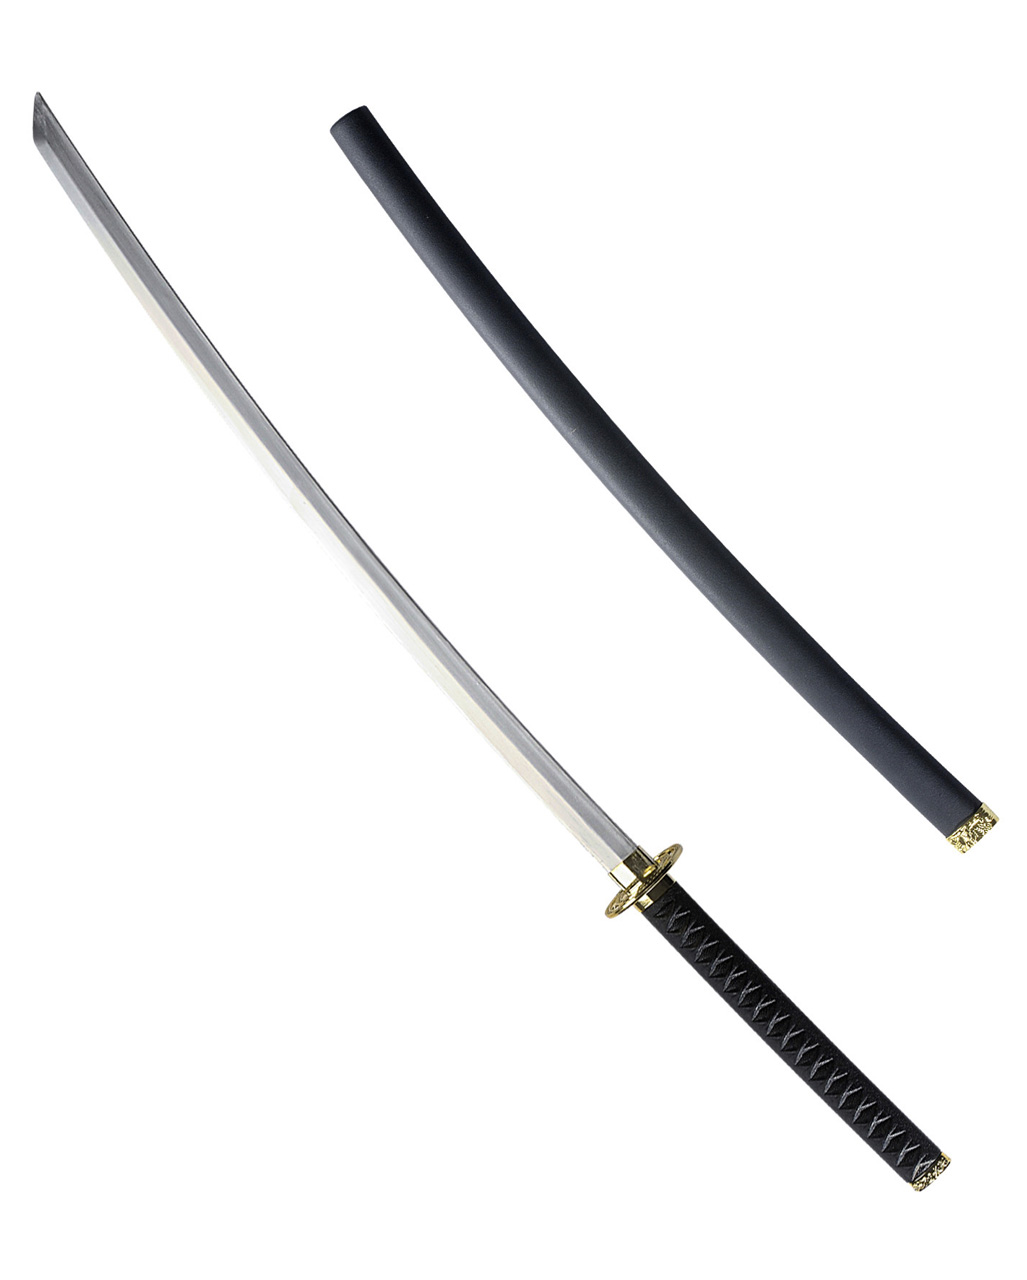 Katana Schwert echt Samurai Schwert aus Stahl mit Einer Scheide zur Dekoration für einen Sammler oder als Geschenk 7KM9-410B 